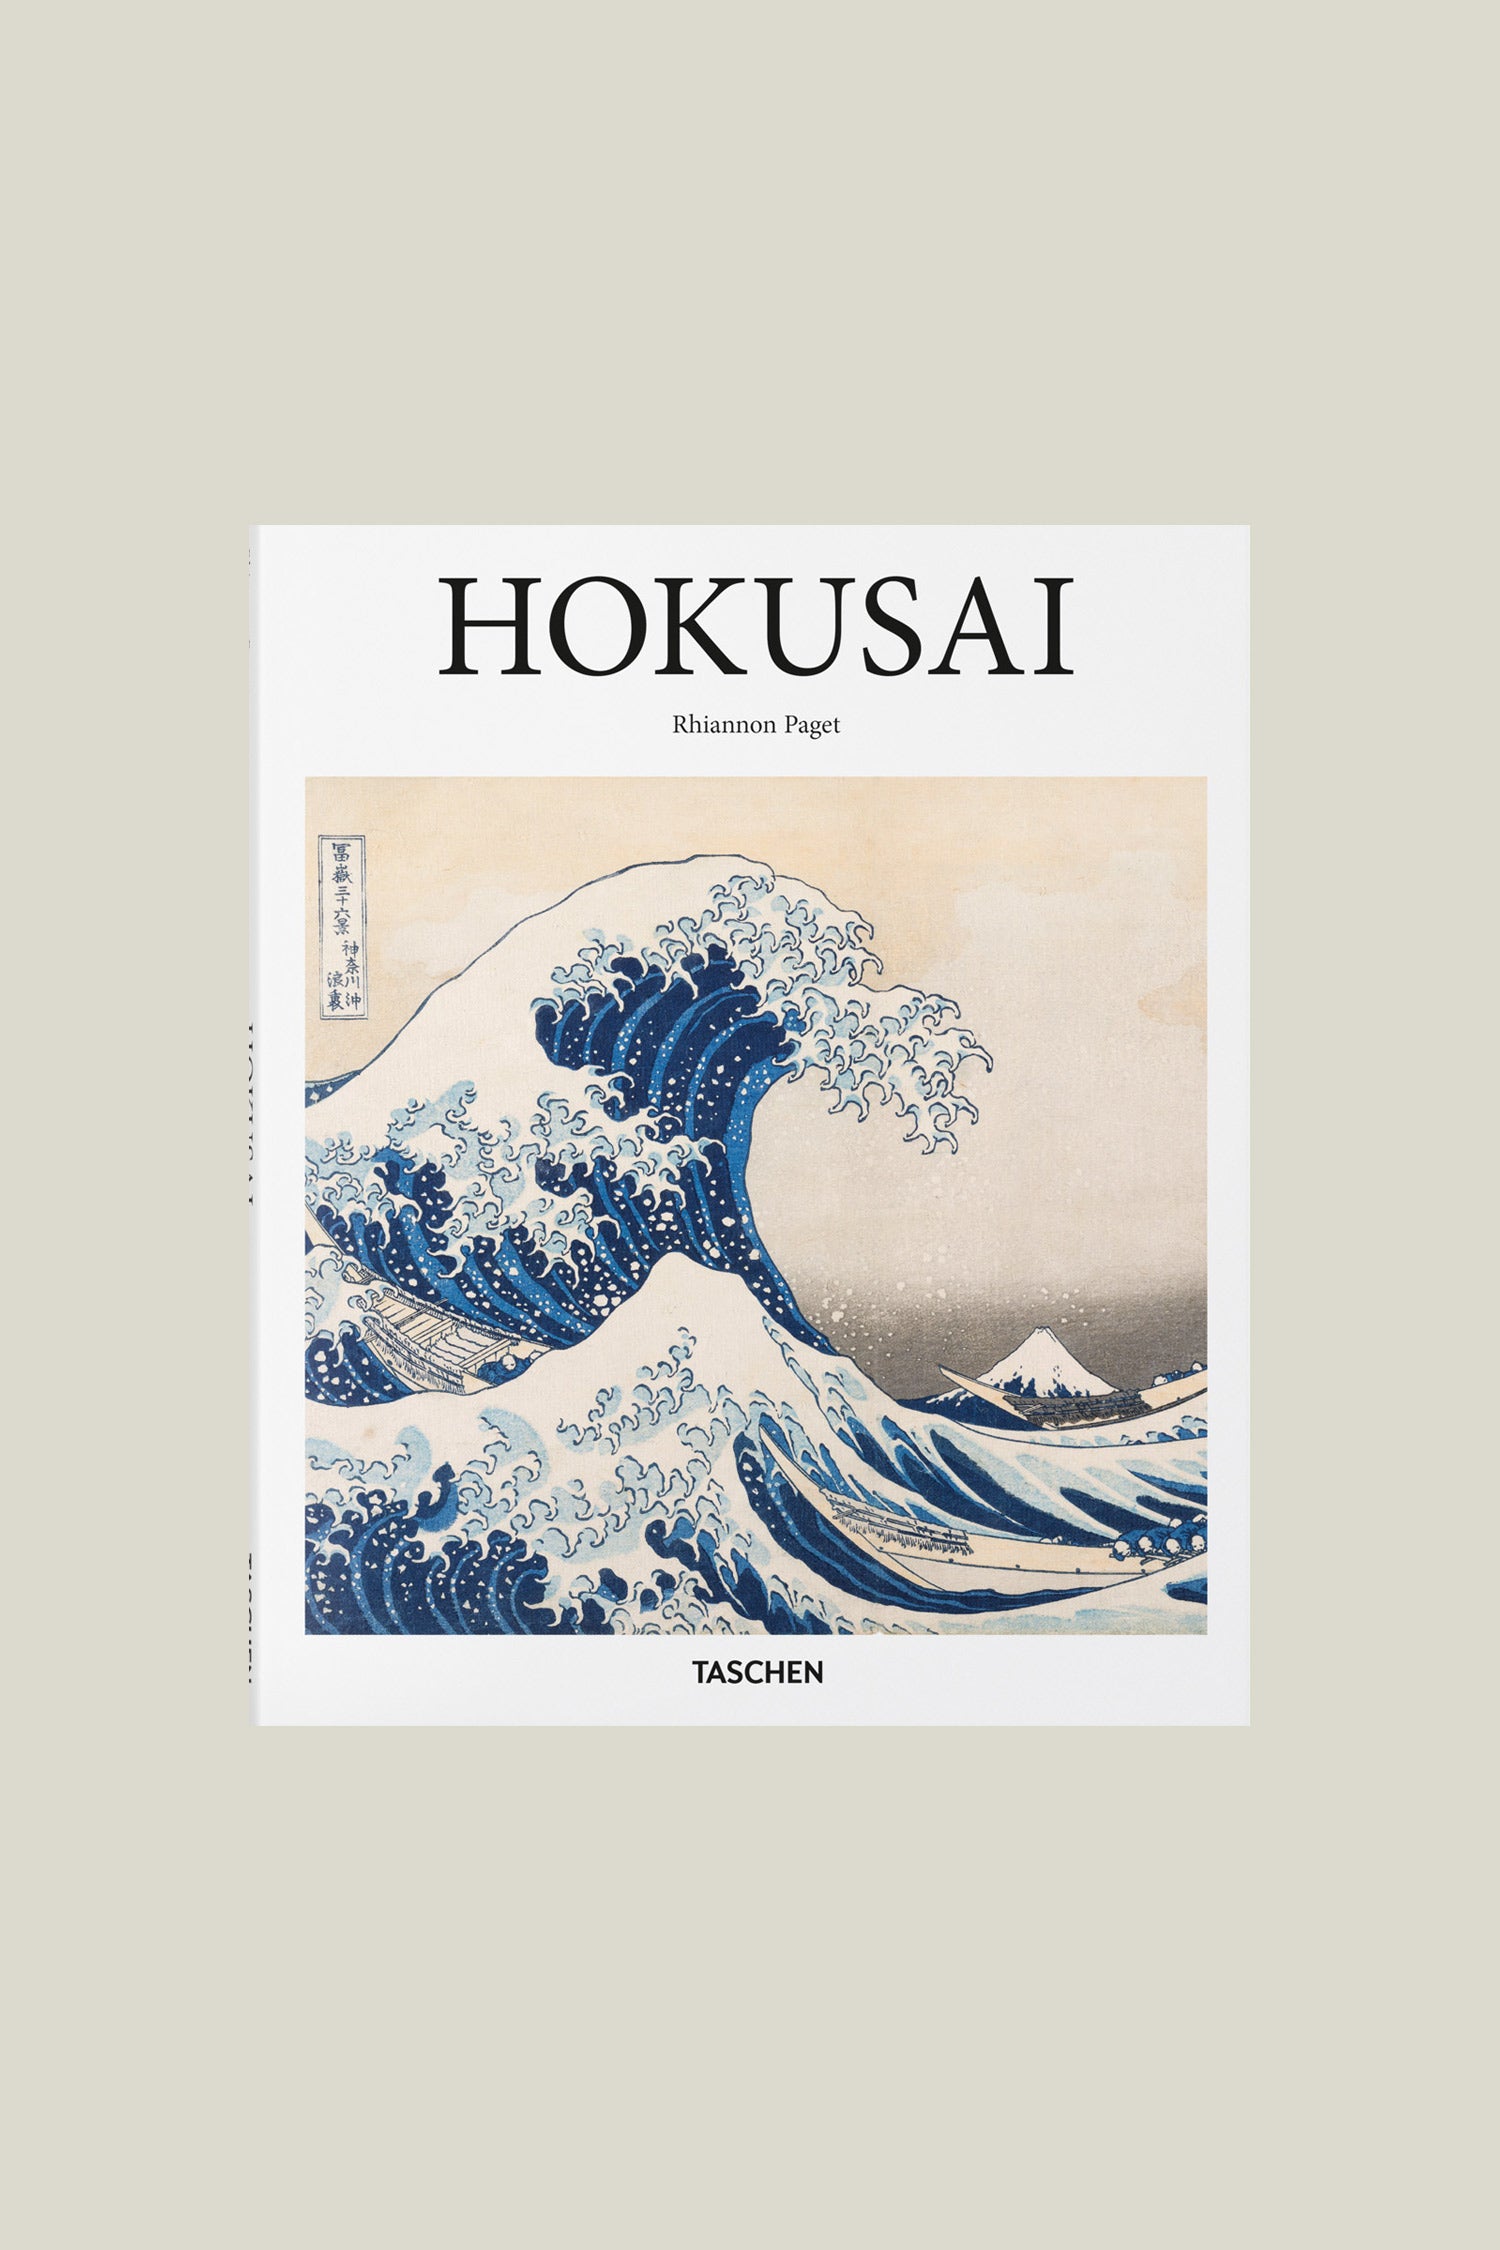 Hokusai - Tsunami of the art world